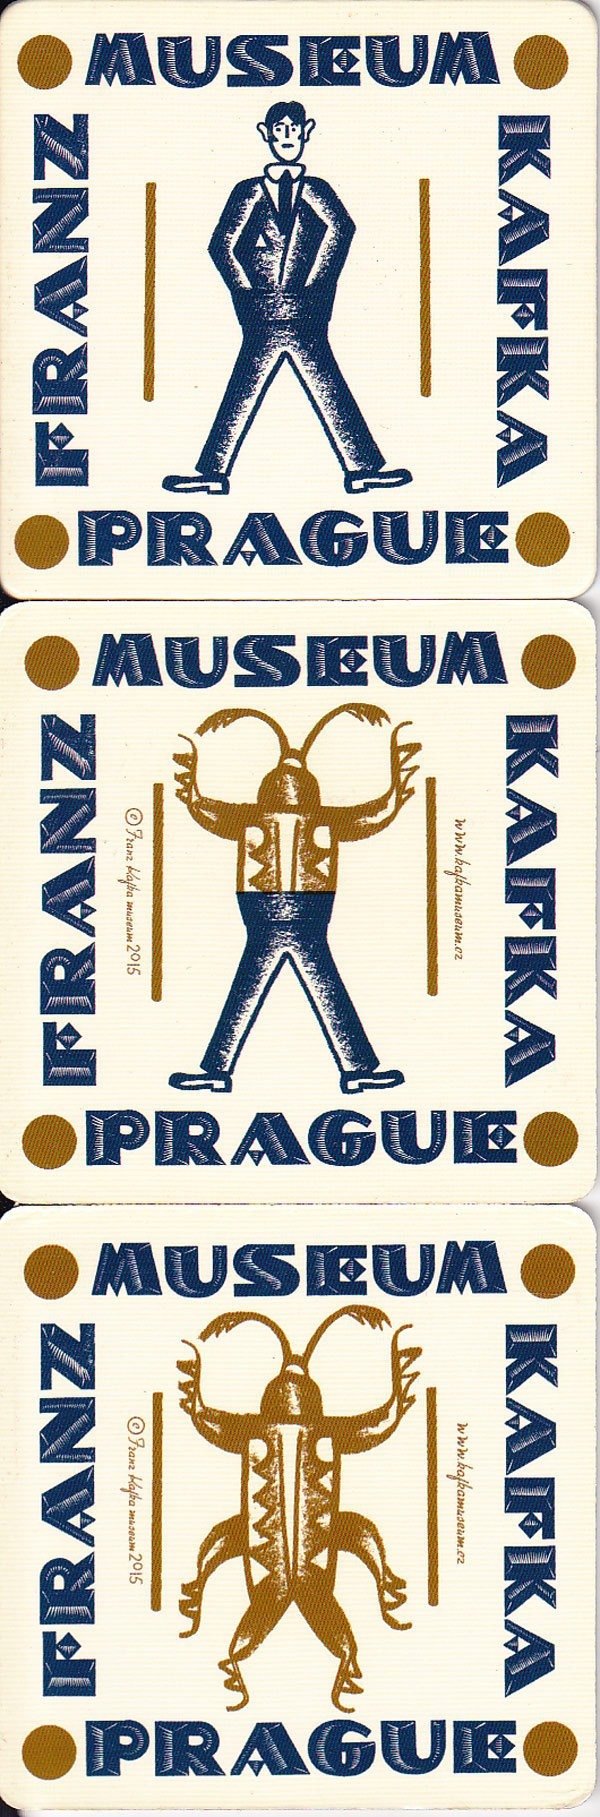 Franz Kafka Museum Prague by Halliwell, Steven compiles